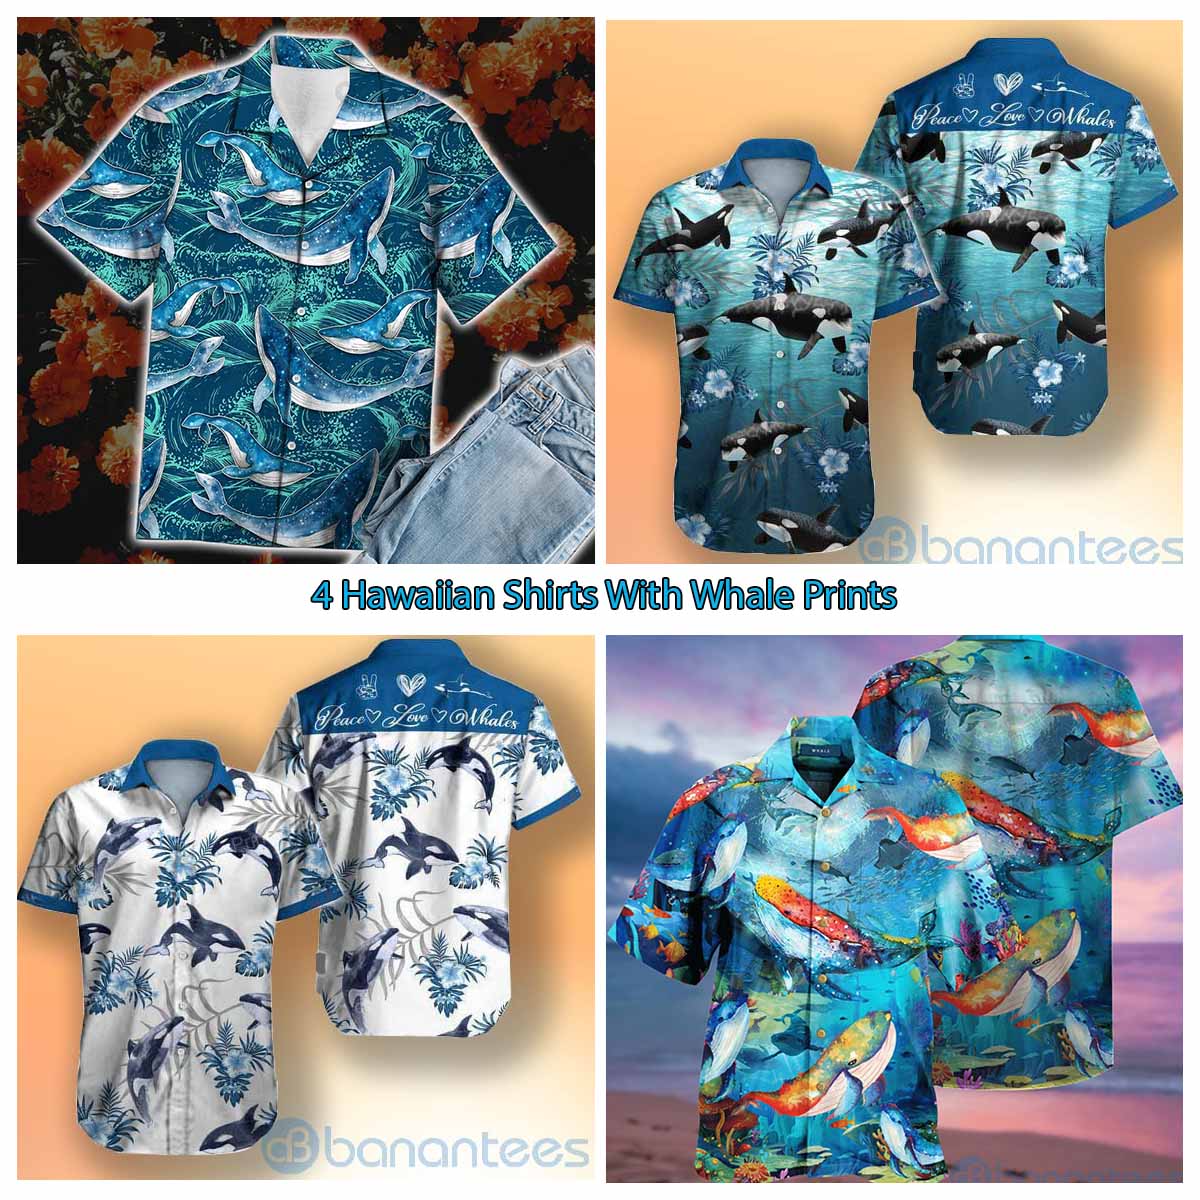 4 Hawaiian Shirts With Whale Prints